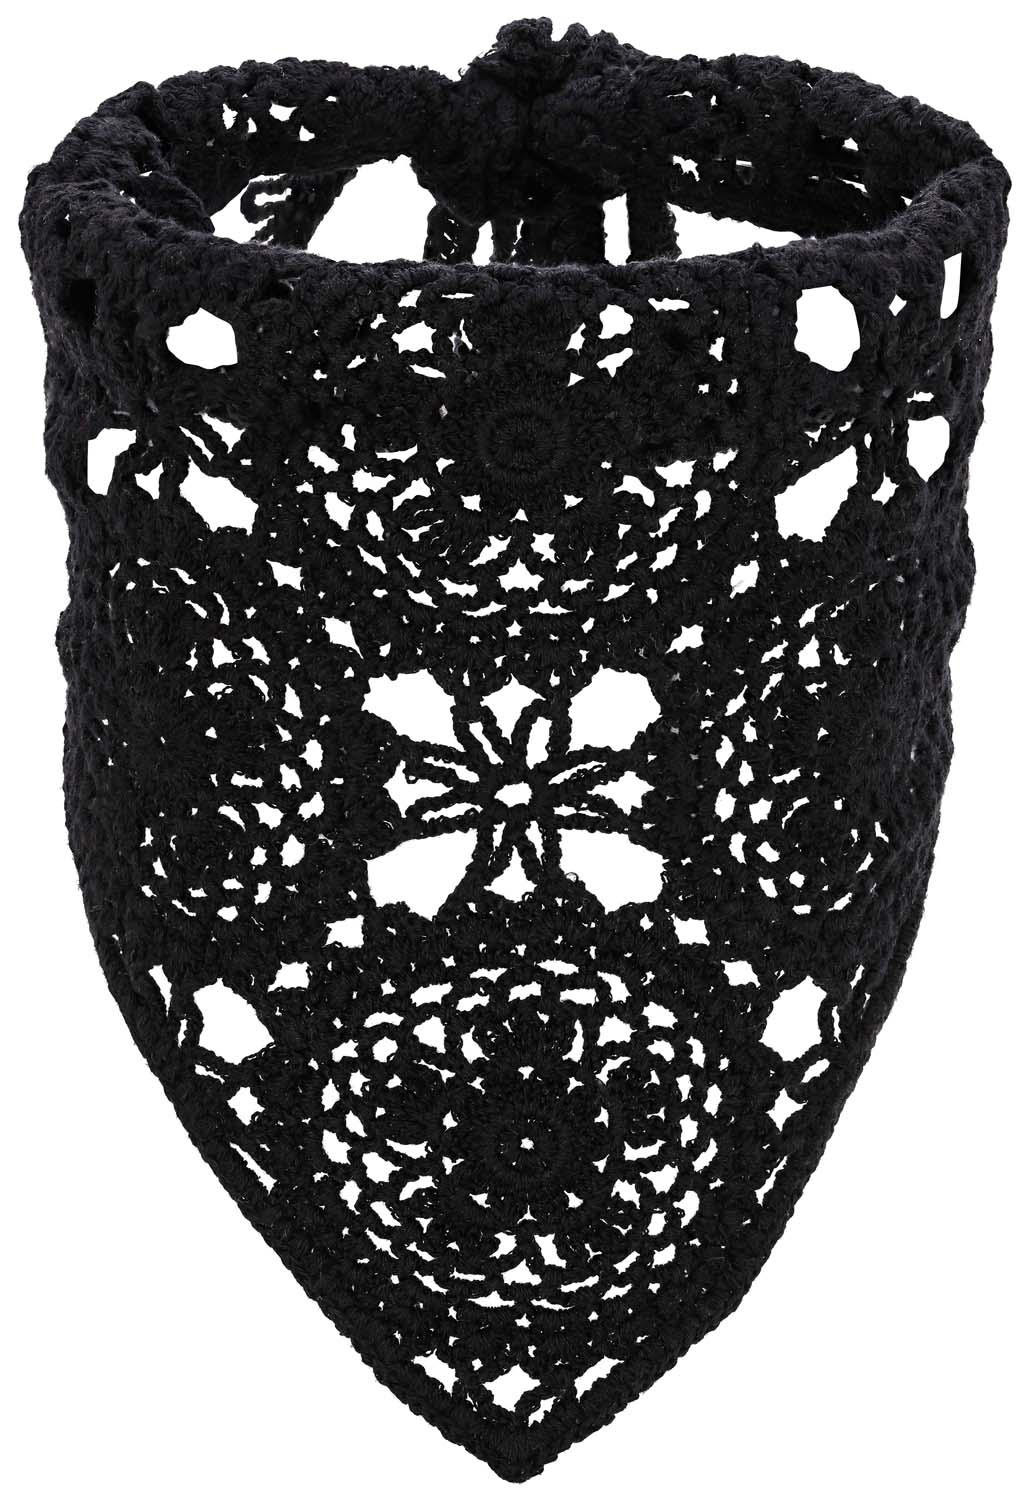 Bandeau - Crocheted Black